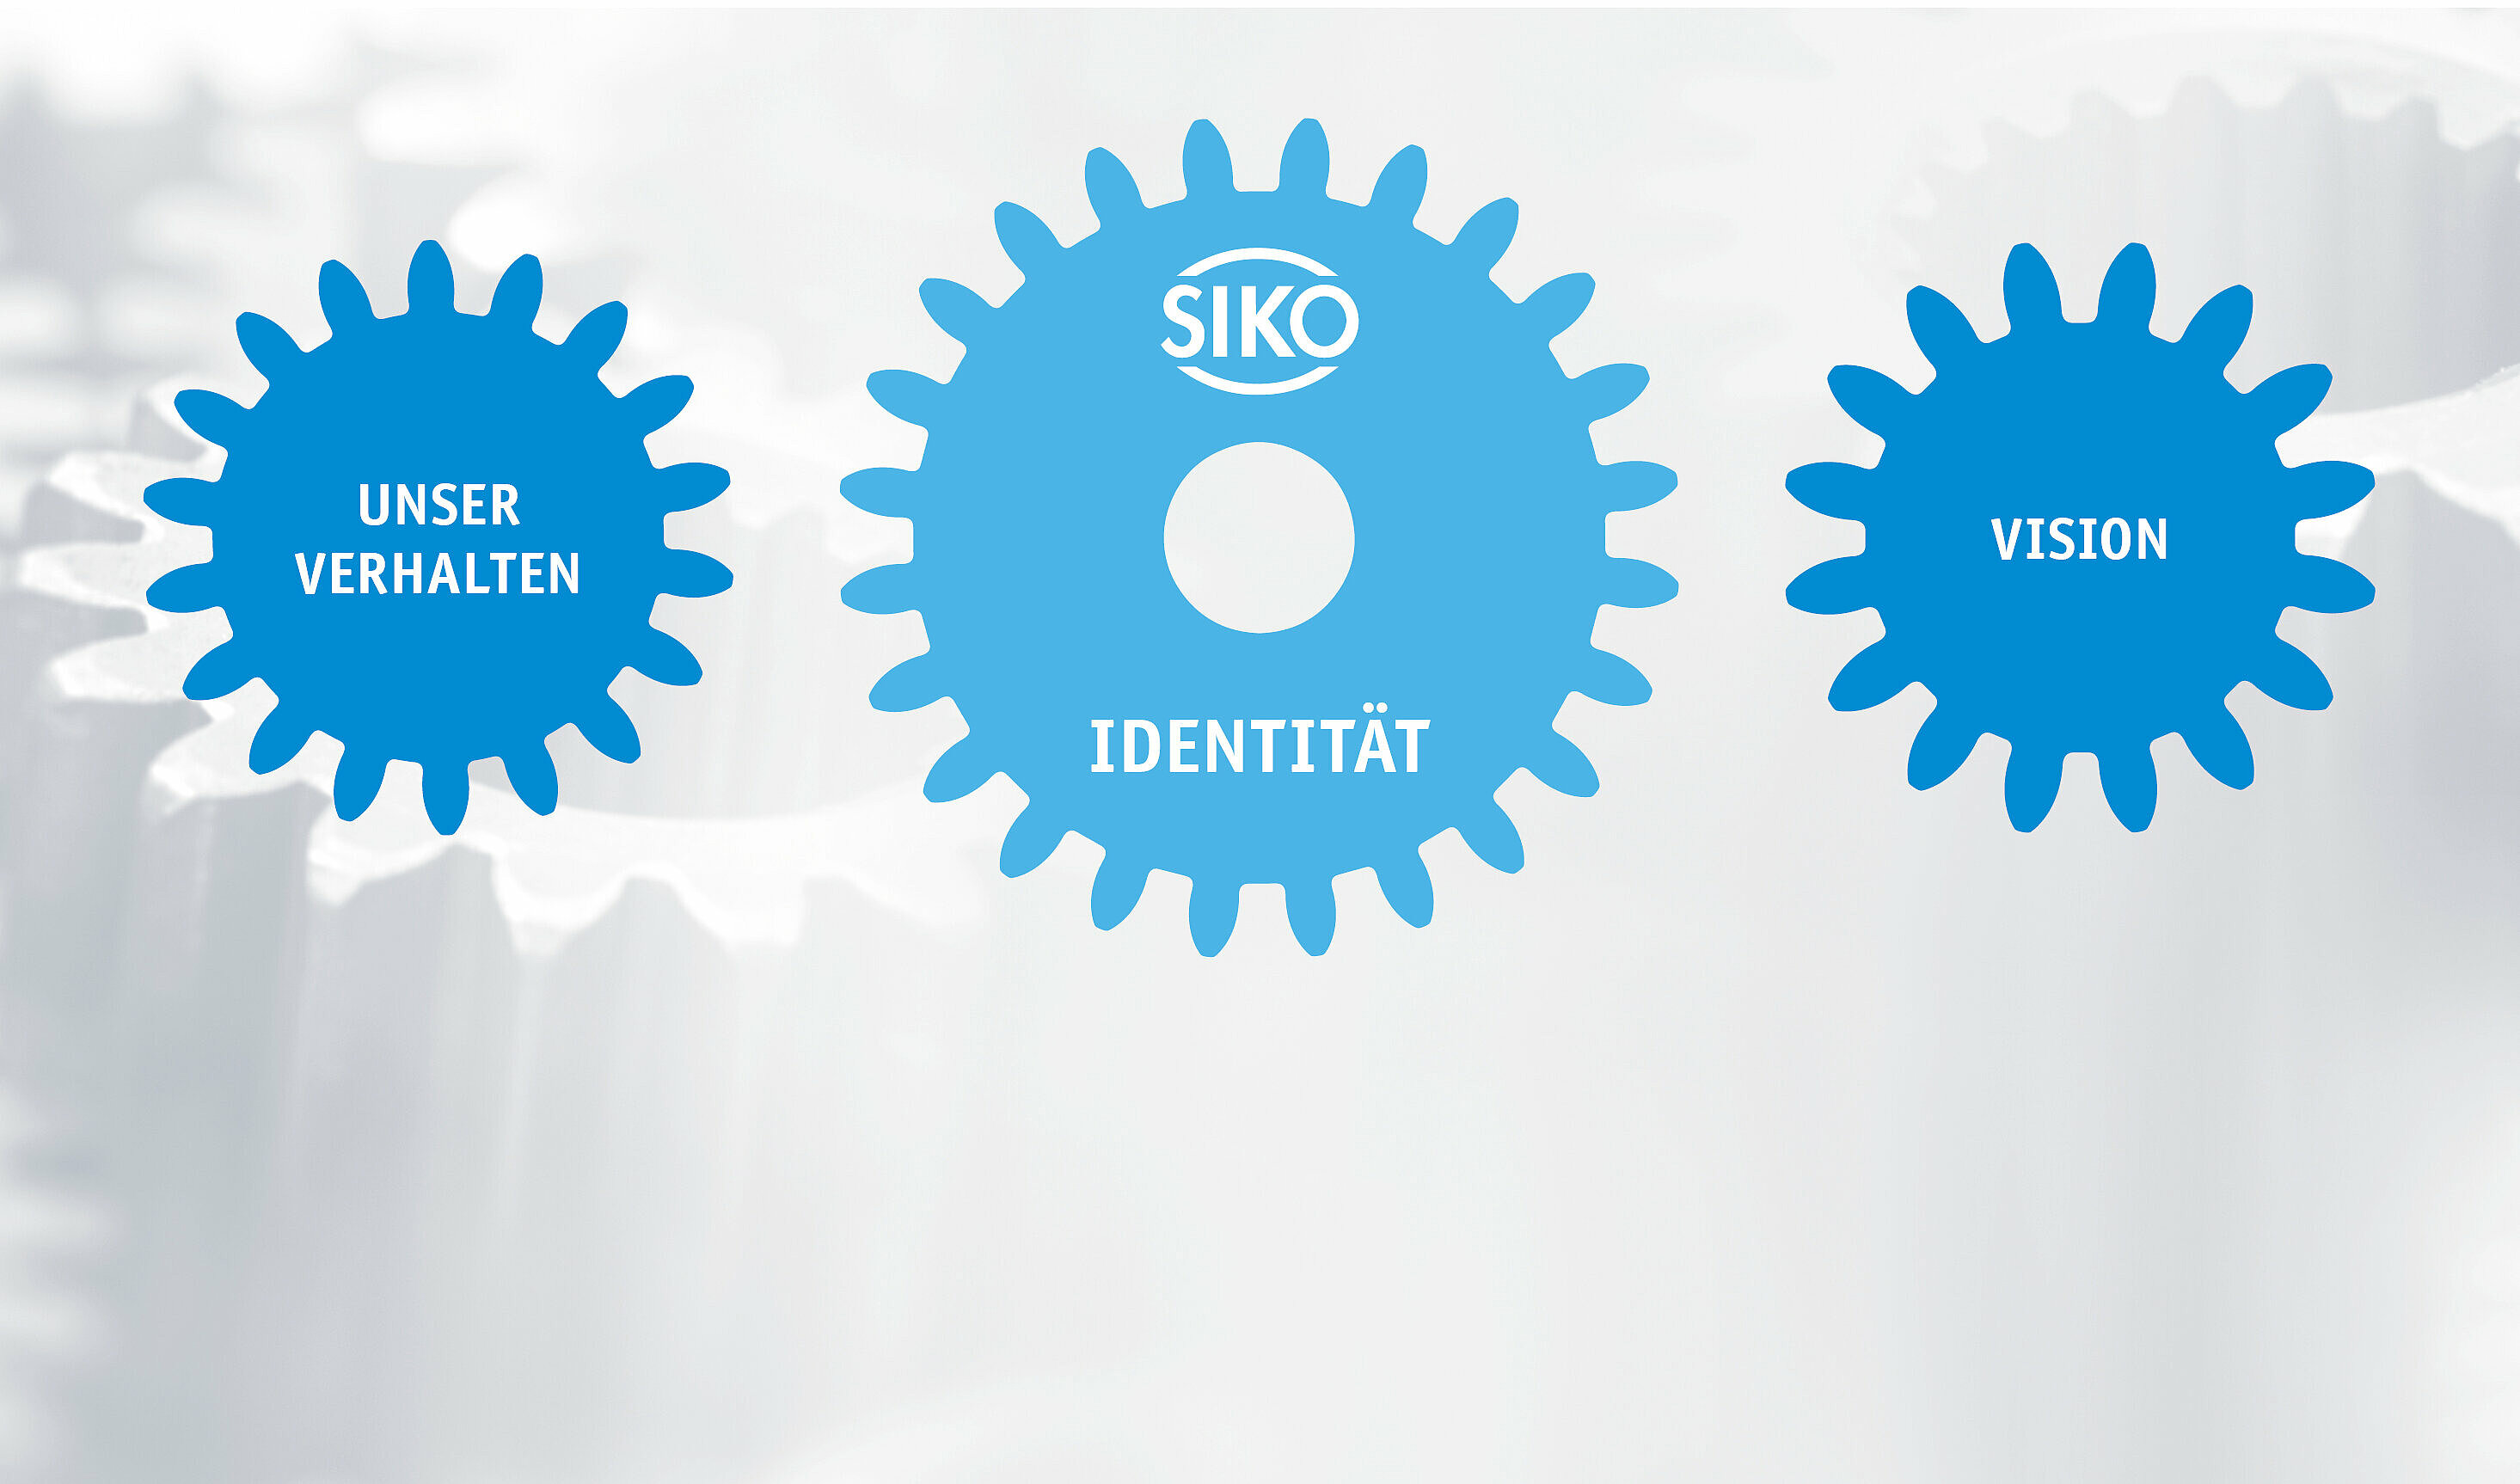 Kernpunkte des SIKO Unternehmensleitbilds in blauen Zahnrädern dargestellt